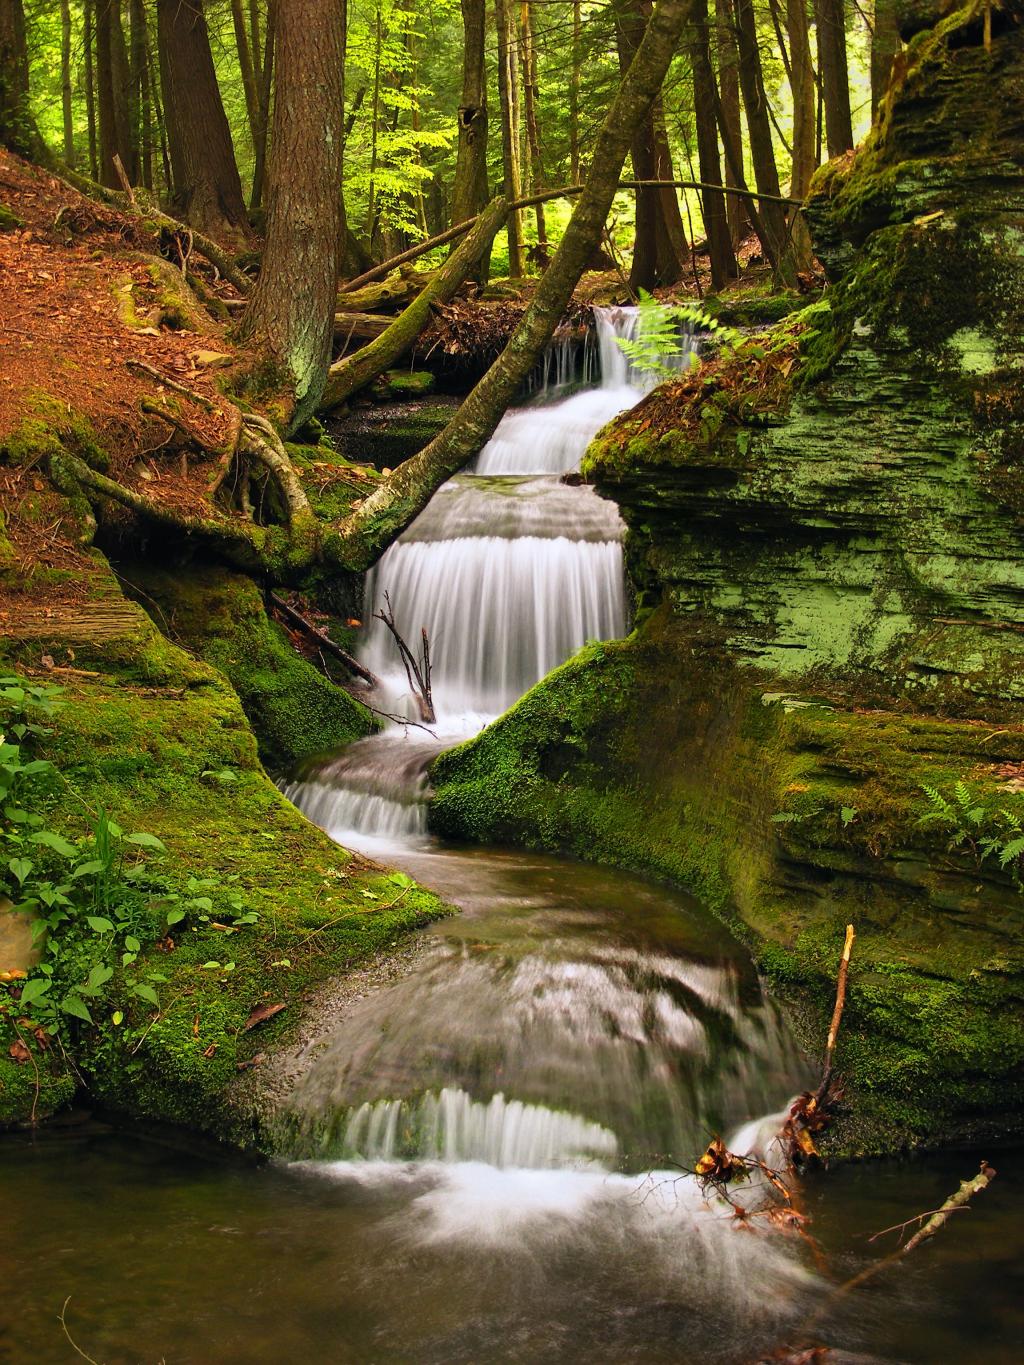 游戏中时光倒流的摄影由绿色的青苔和绿叶树高清壁纸包围的清澈的瀑布